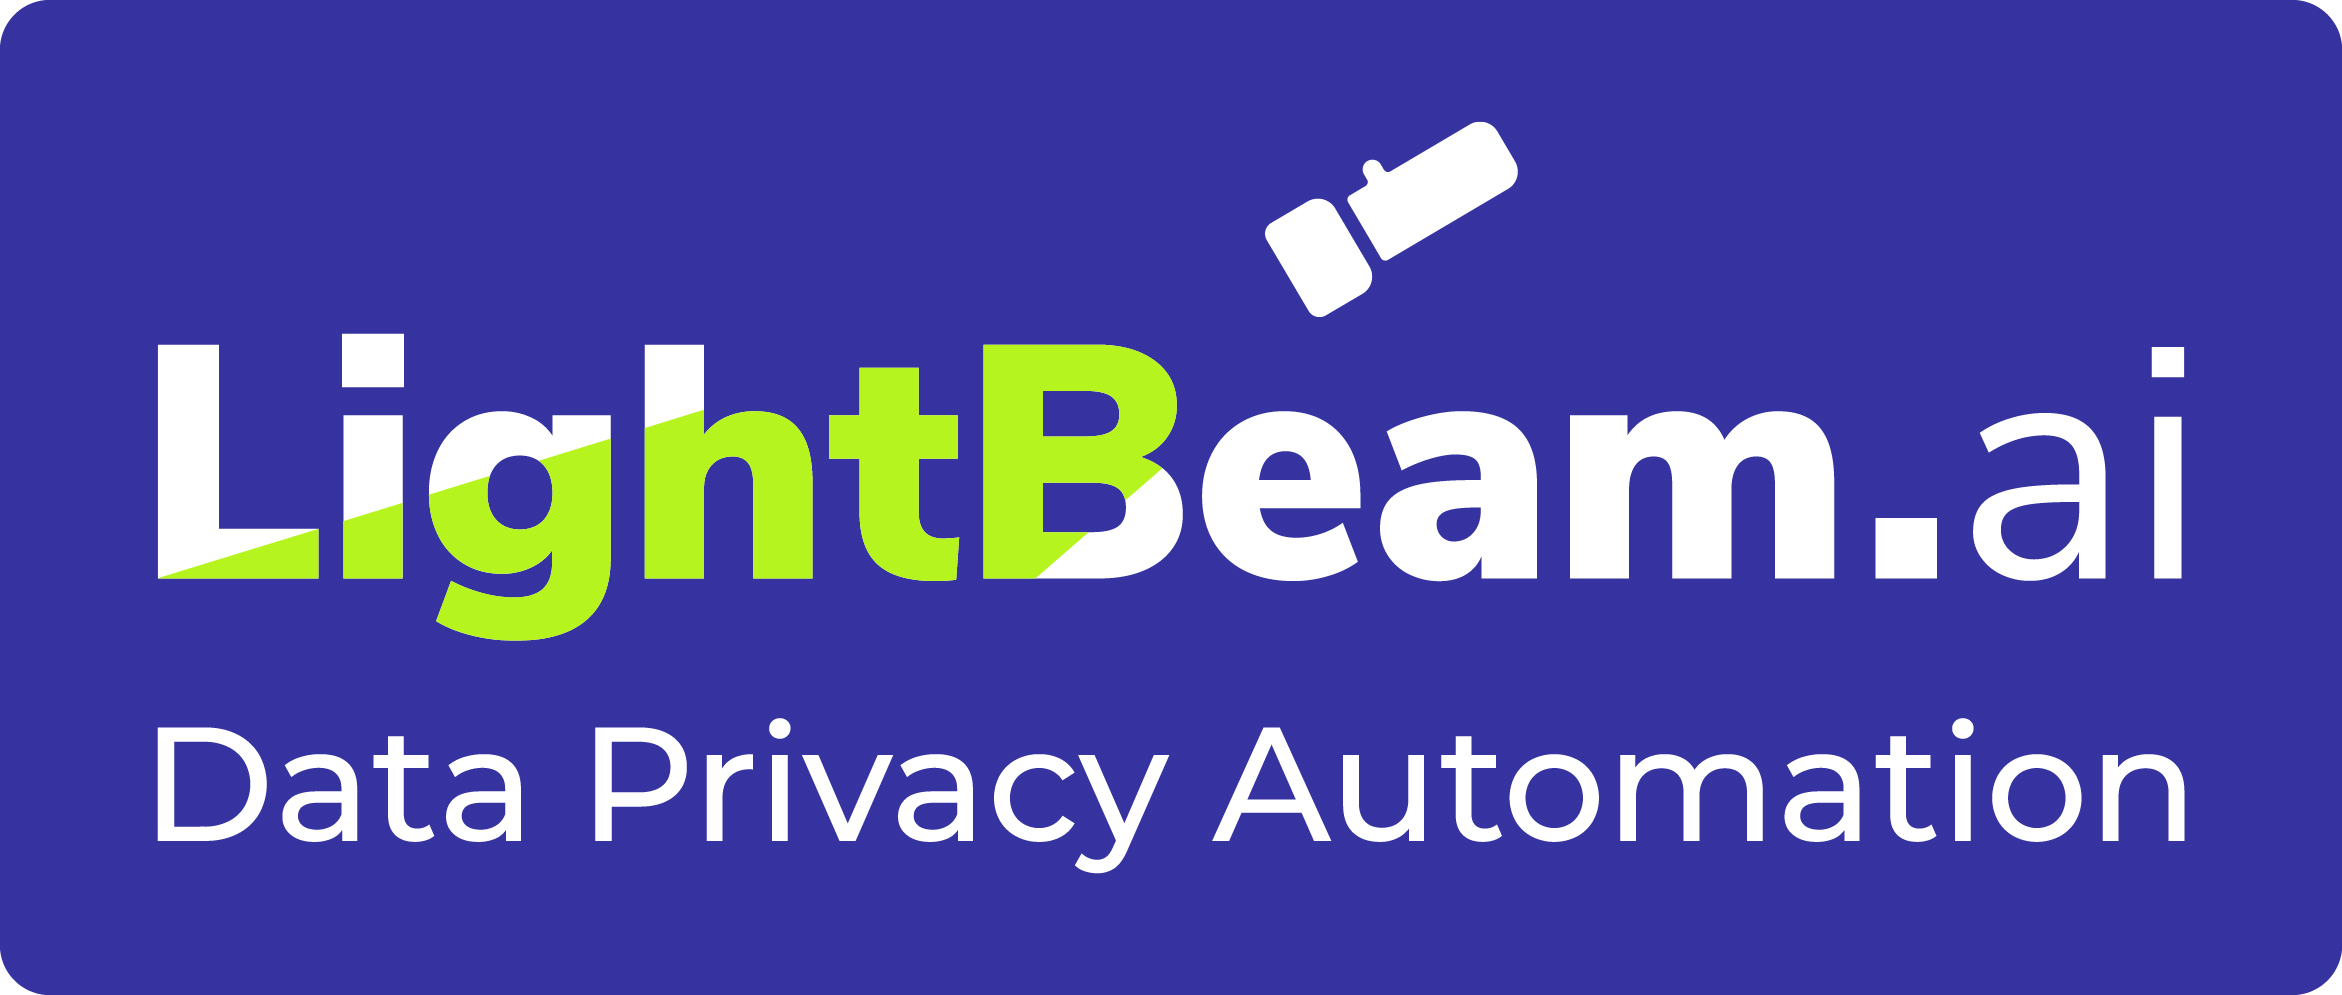 Lightbeam Logo (1) (2).jpg